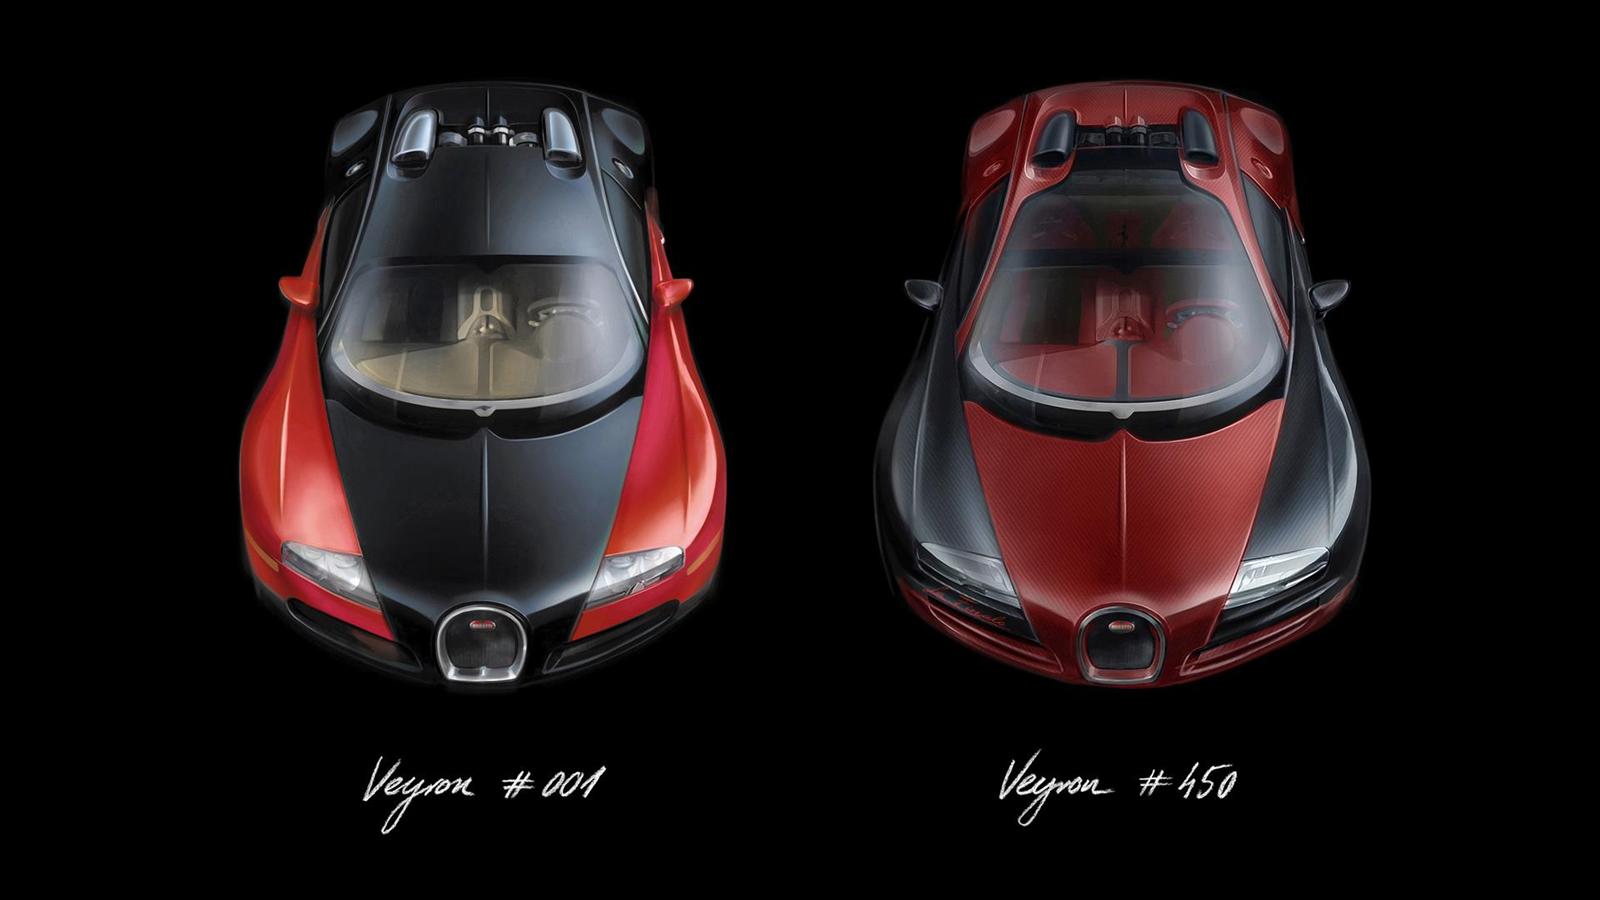 2015 Bugatti Veyron Grand Sport Vitesse La Finale